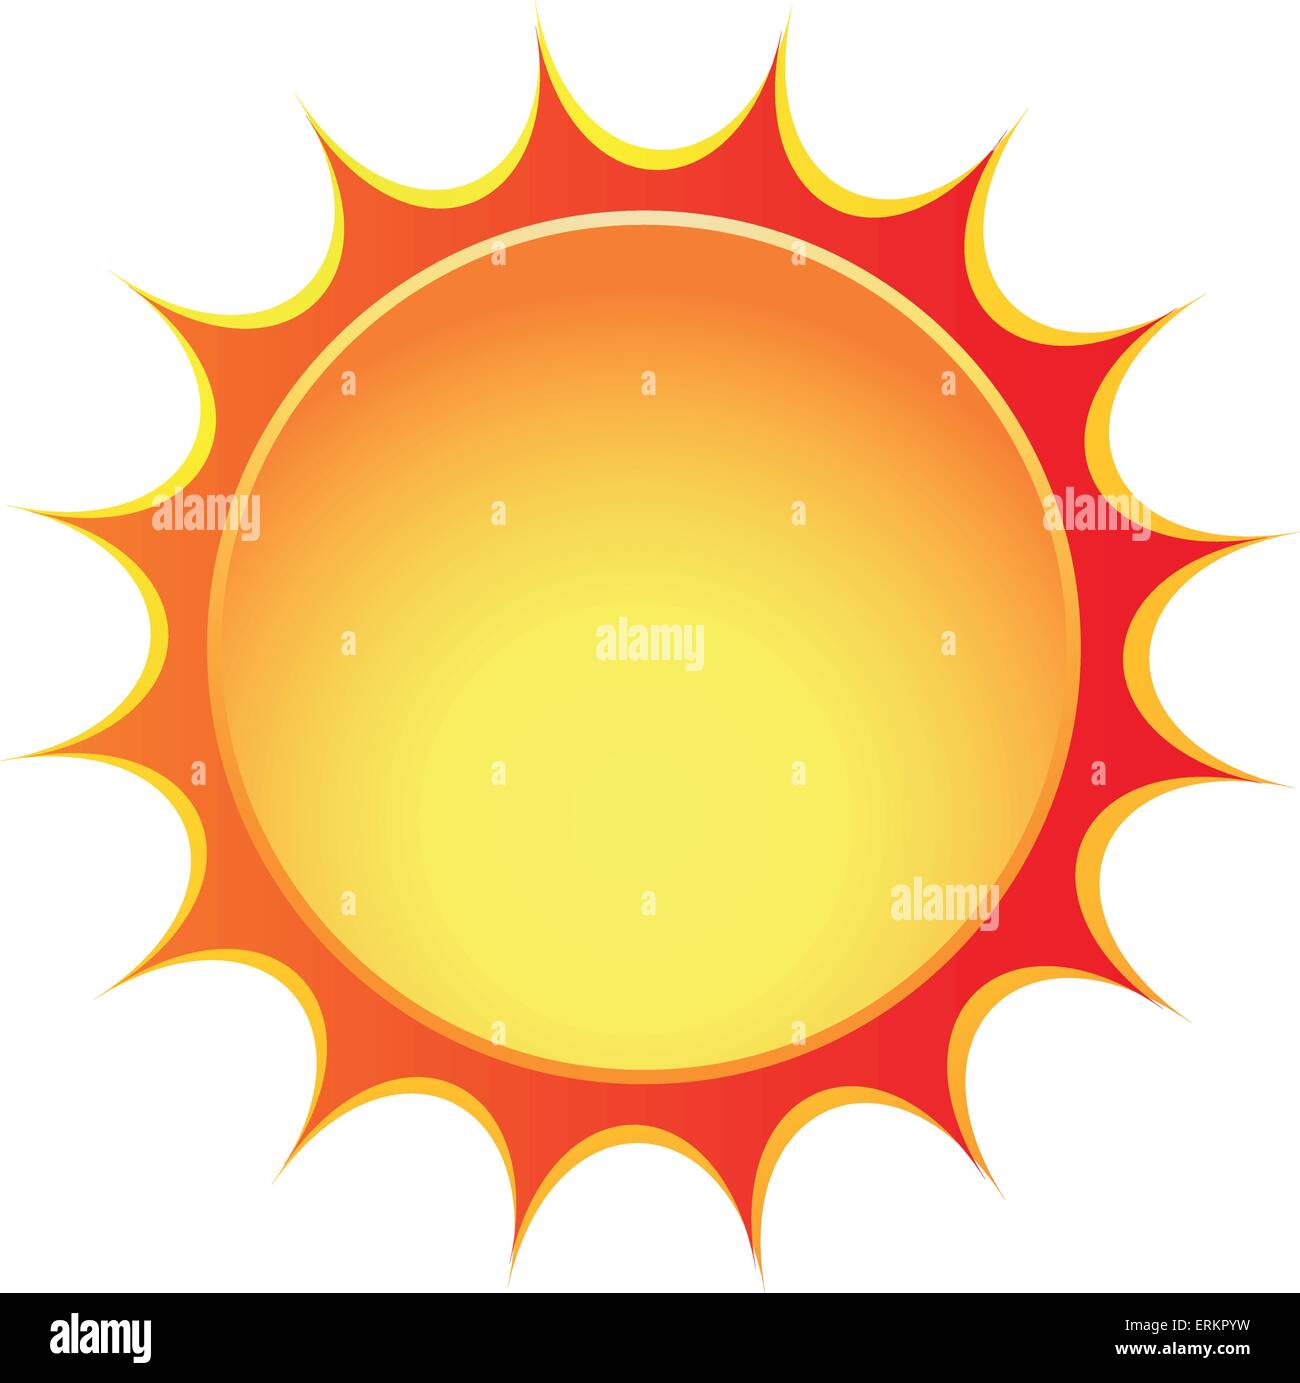 Vektor-Illustration von Sonnen-Symbol auf weißem Hintergrund Stock Vektor